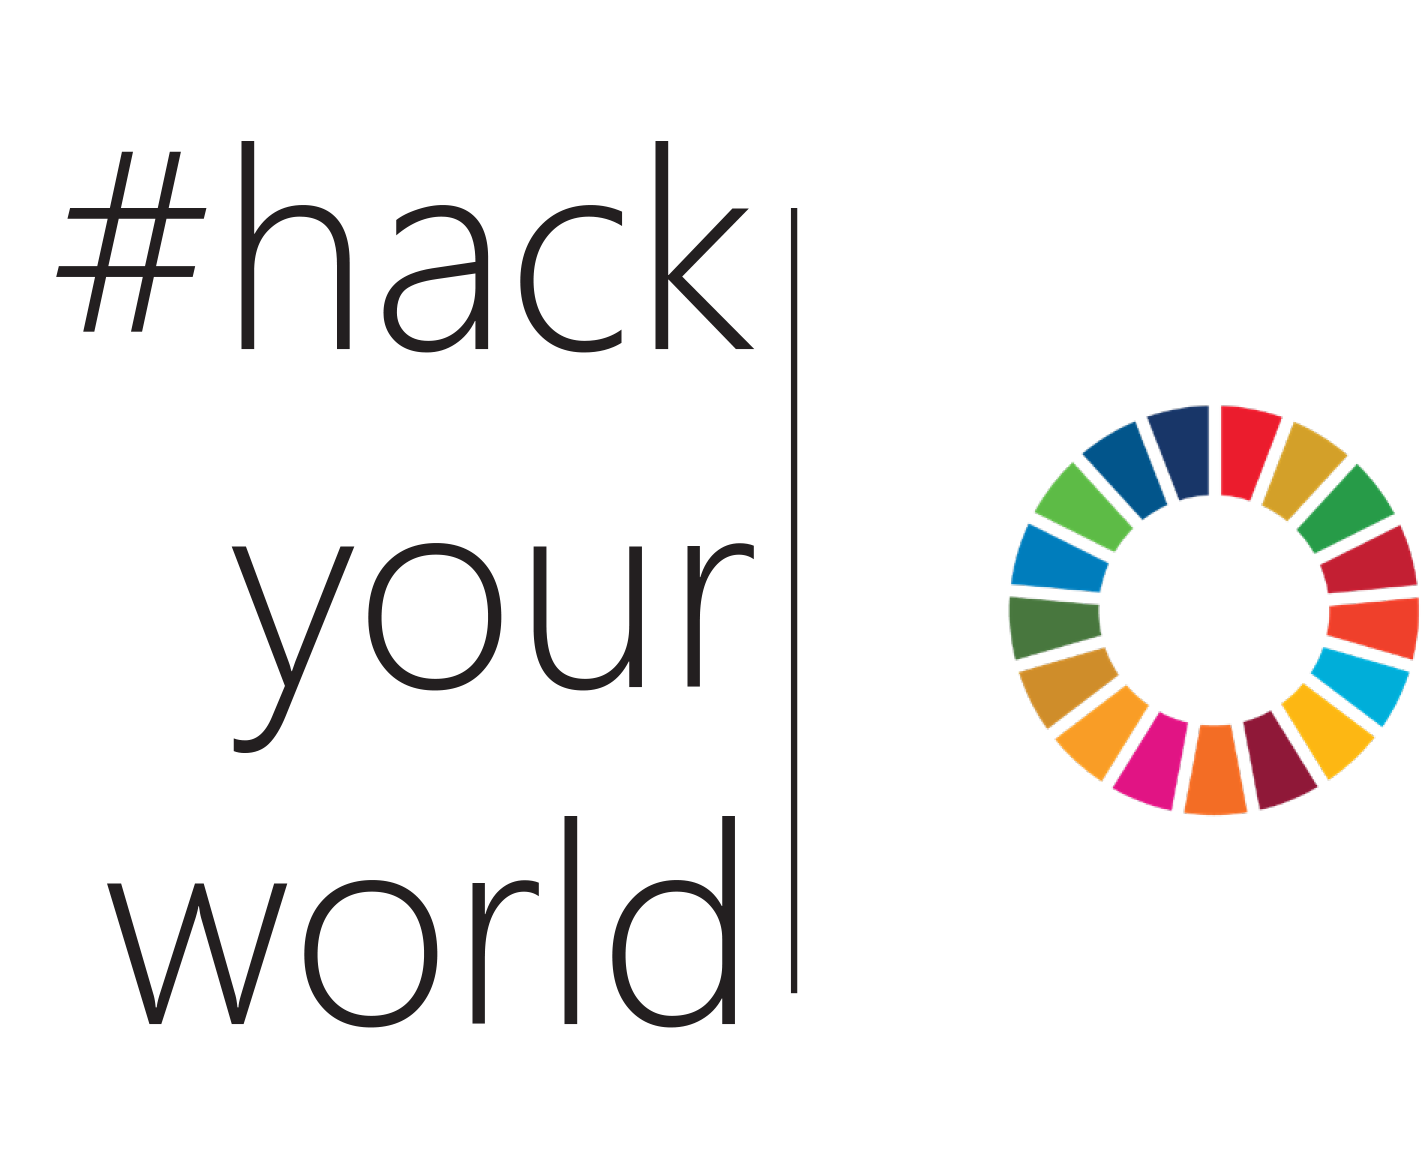 Hack Your World drivs av IBM, Ericsson och Drivhuset och stöttar FN:s hållbarhetsmål